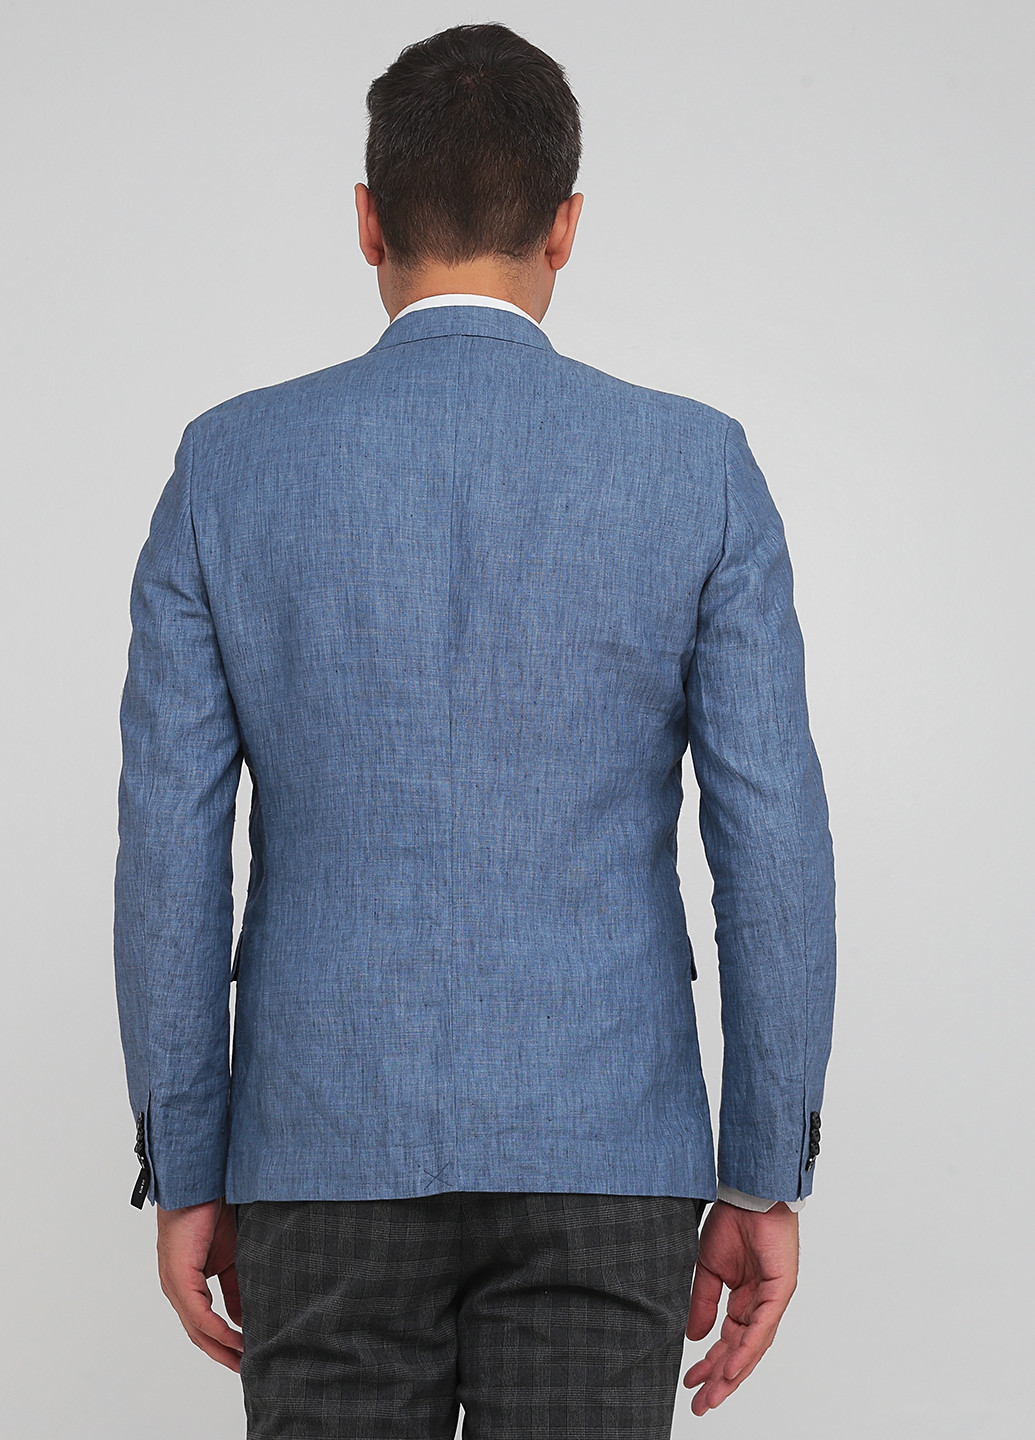 Пиджак H&M меланж синий кэжуал лен